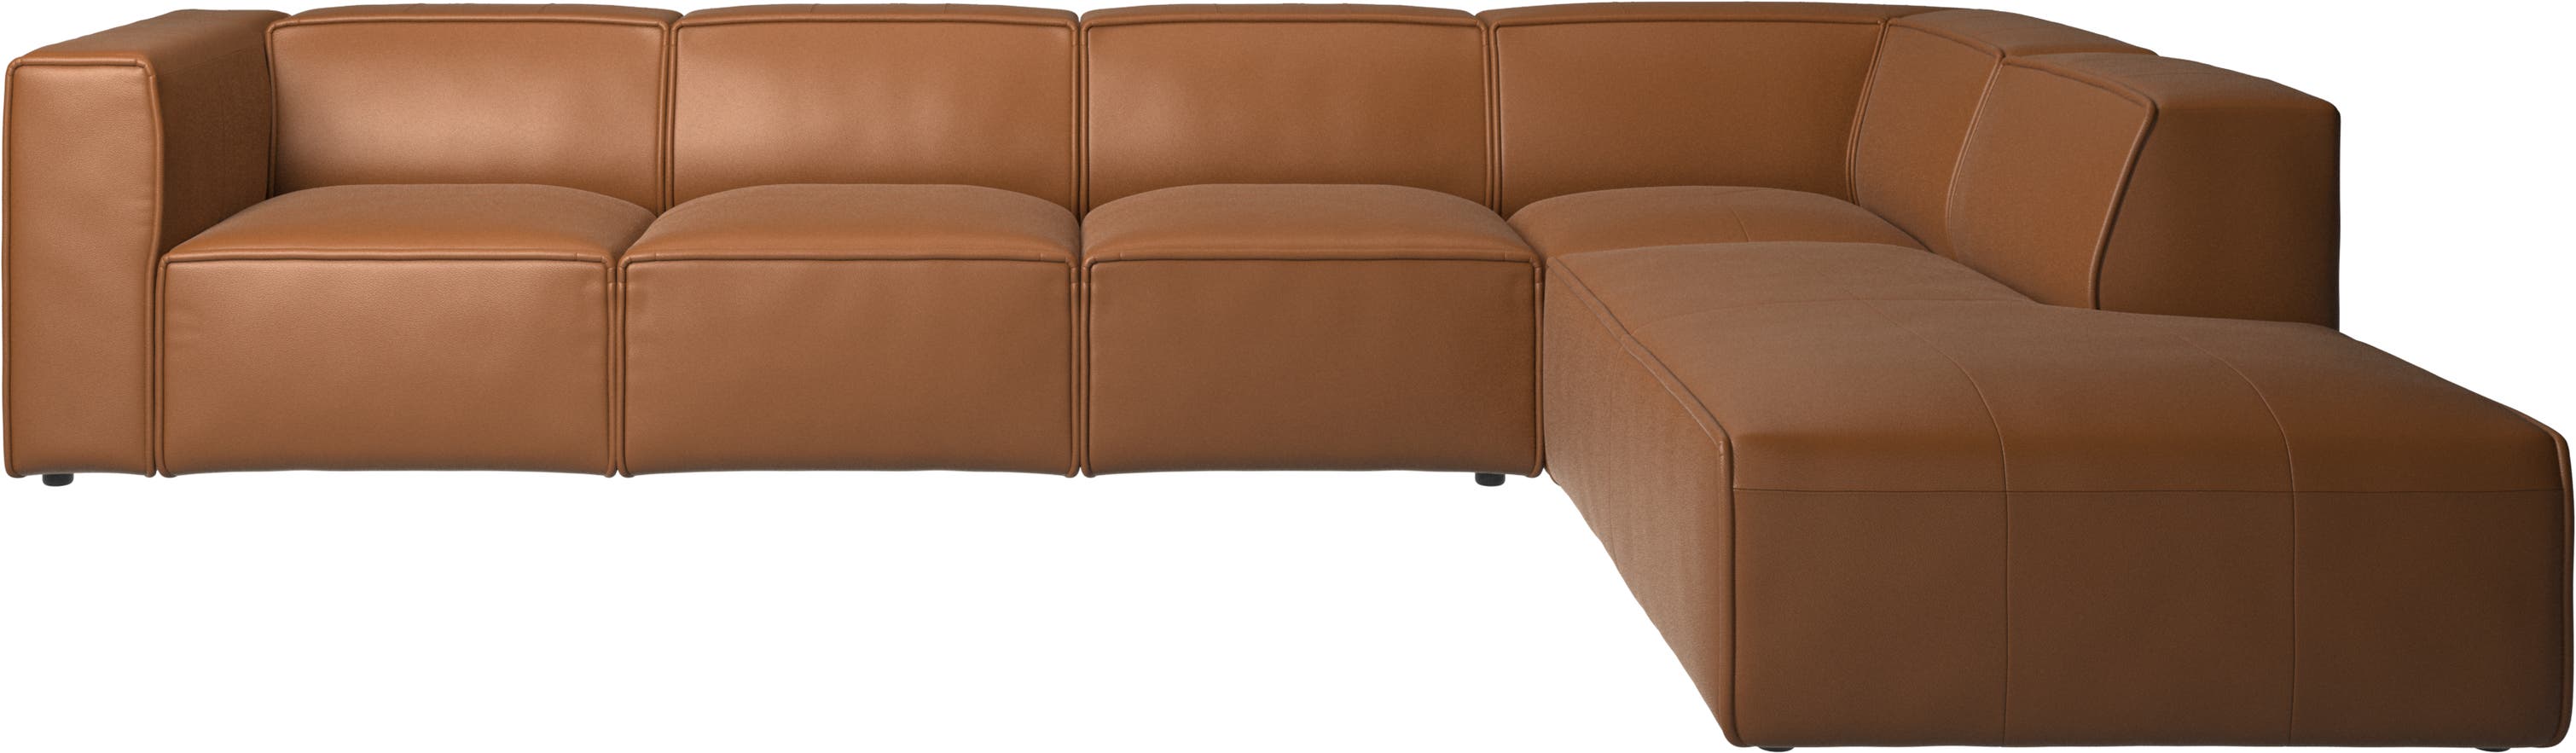 γωνιακός καναπές Carmo με μονάδα lounging